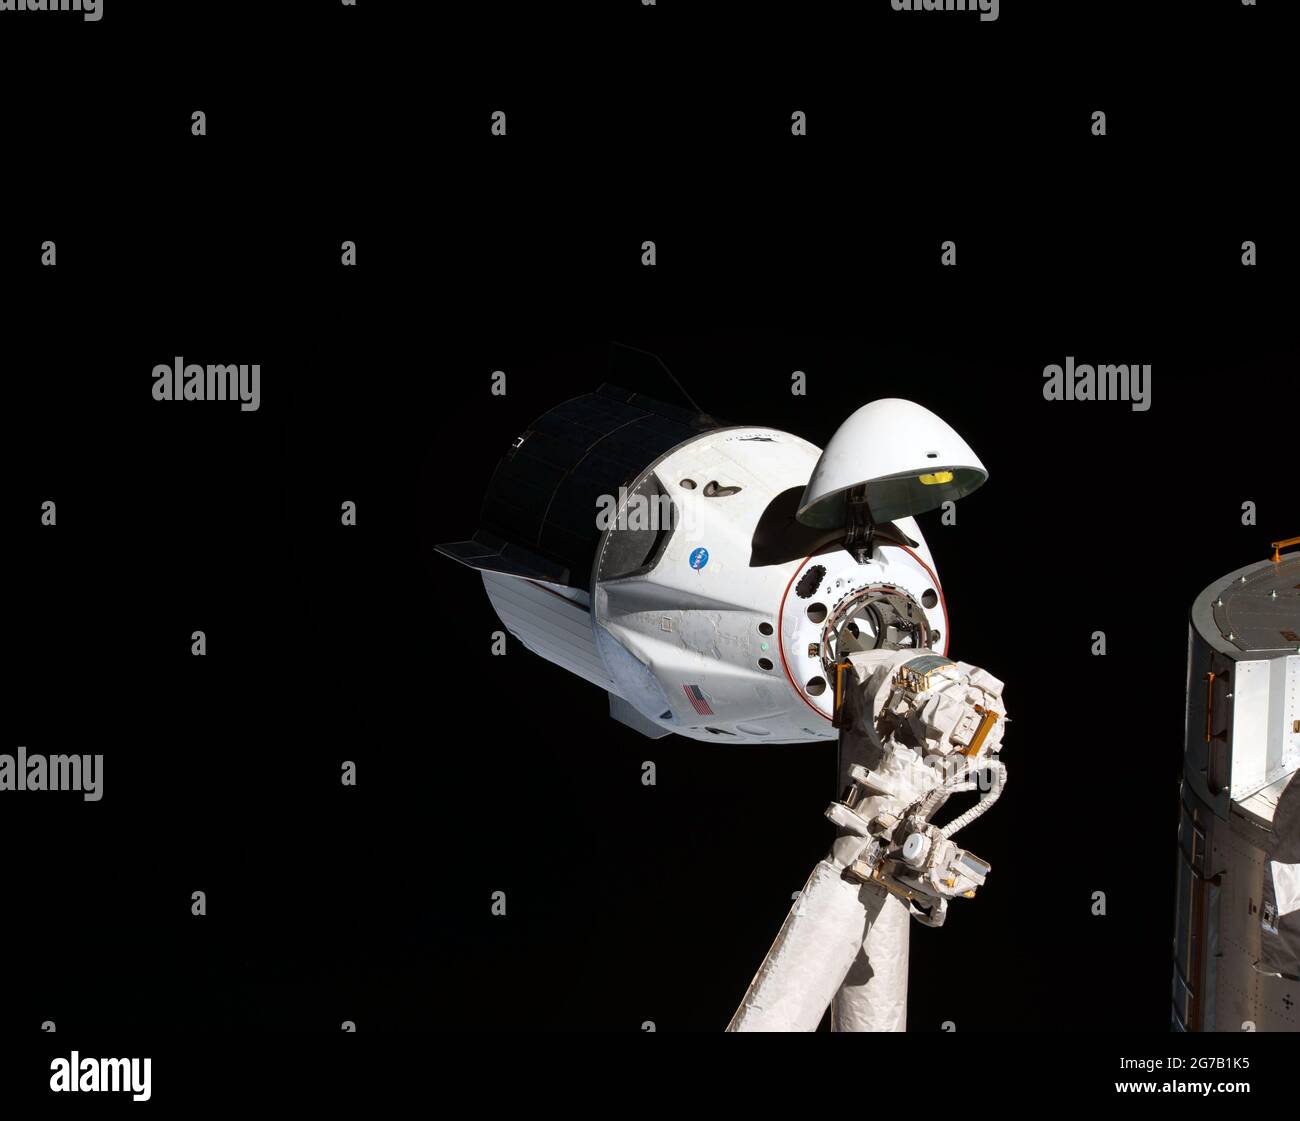 Il primo Drago SpaceX si avvicina all'ISS. La navicella spaziale SpaceX Crew Dragon senza equipaggio è il primo veicolo commerciale a visitare la Stazione spaziale Internazionale. Qui raffigurato con il cono del naso aperto che rivela il meccanismo di aggancio mentre si avvicina al modulo Harmony della stazione. Il Crew Dragon si aggirava automaticamente qualche istante dopo sull'adattatore docking internazionale collegato all'estremità anteriore di Harmony. Marzo 2019. Una versione unica ottimizzata e migliorata di un'immagine della NASA / credito obbligatorio: NASA Foto Stock